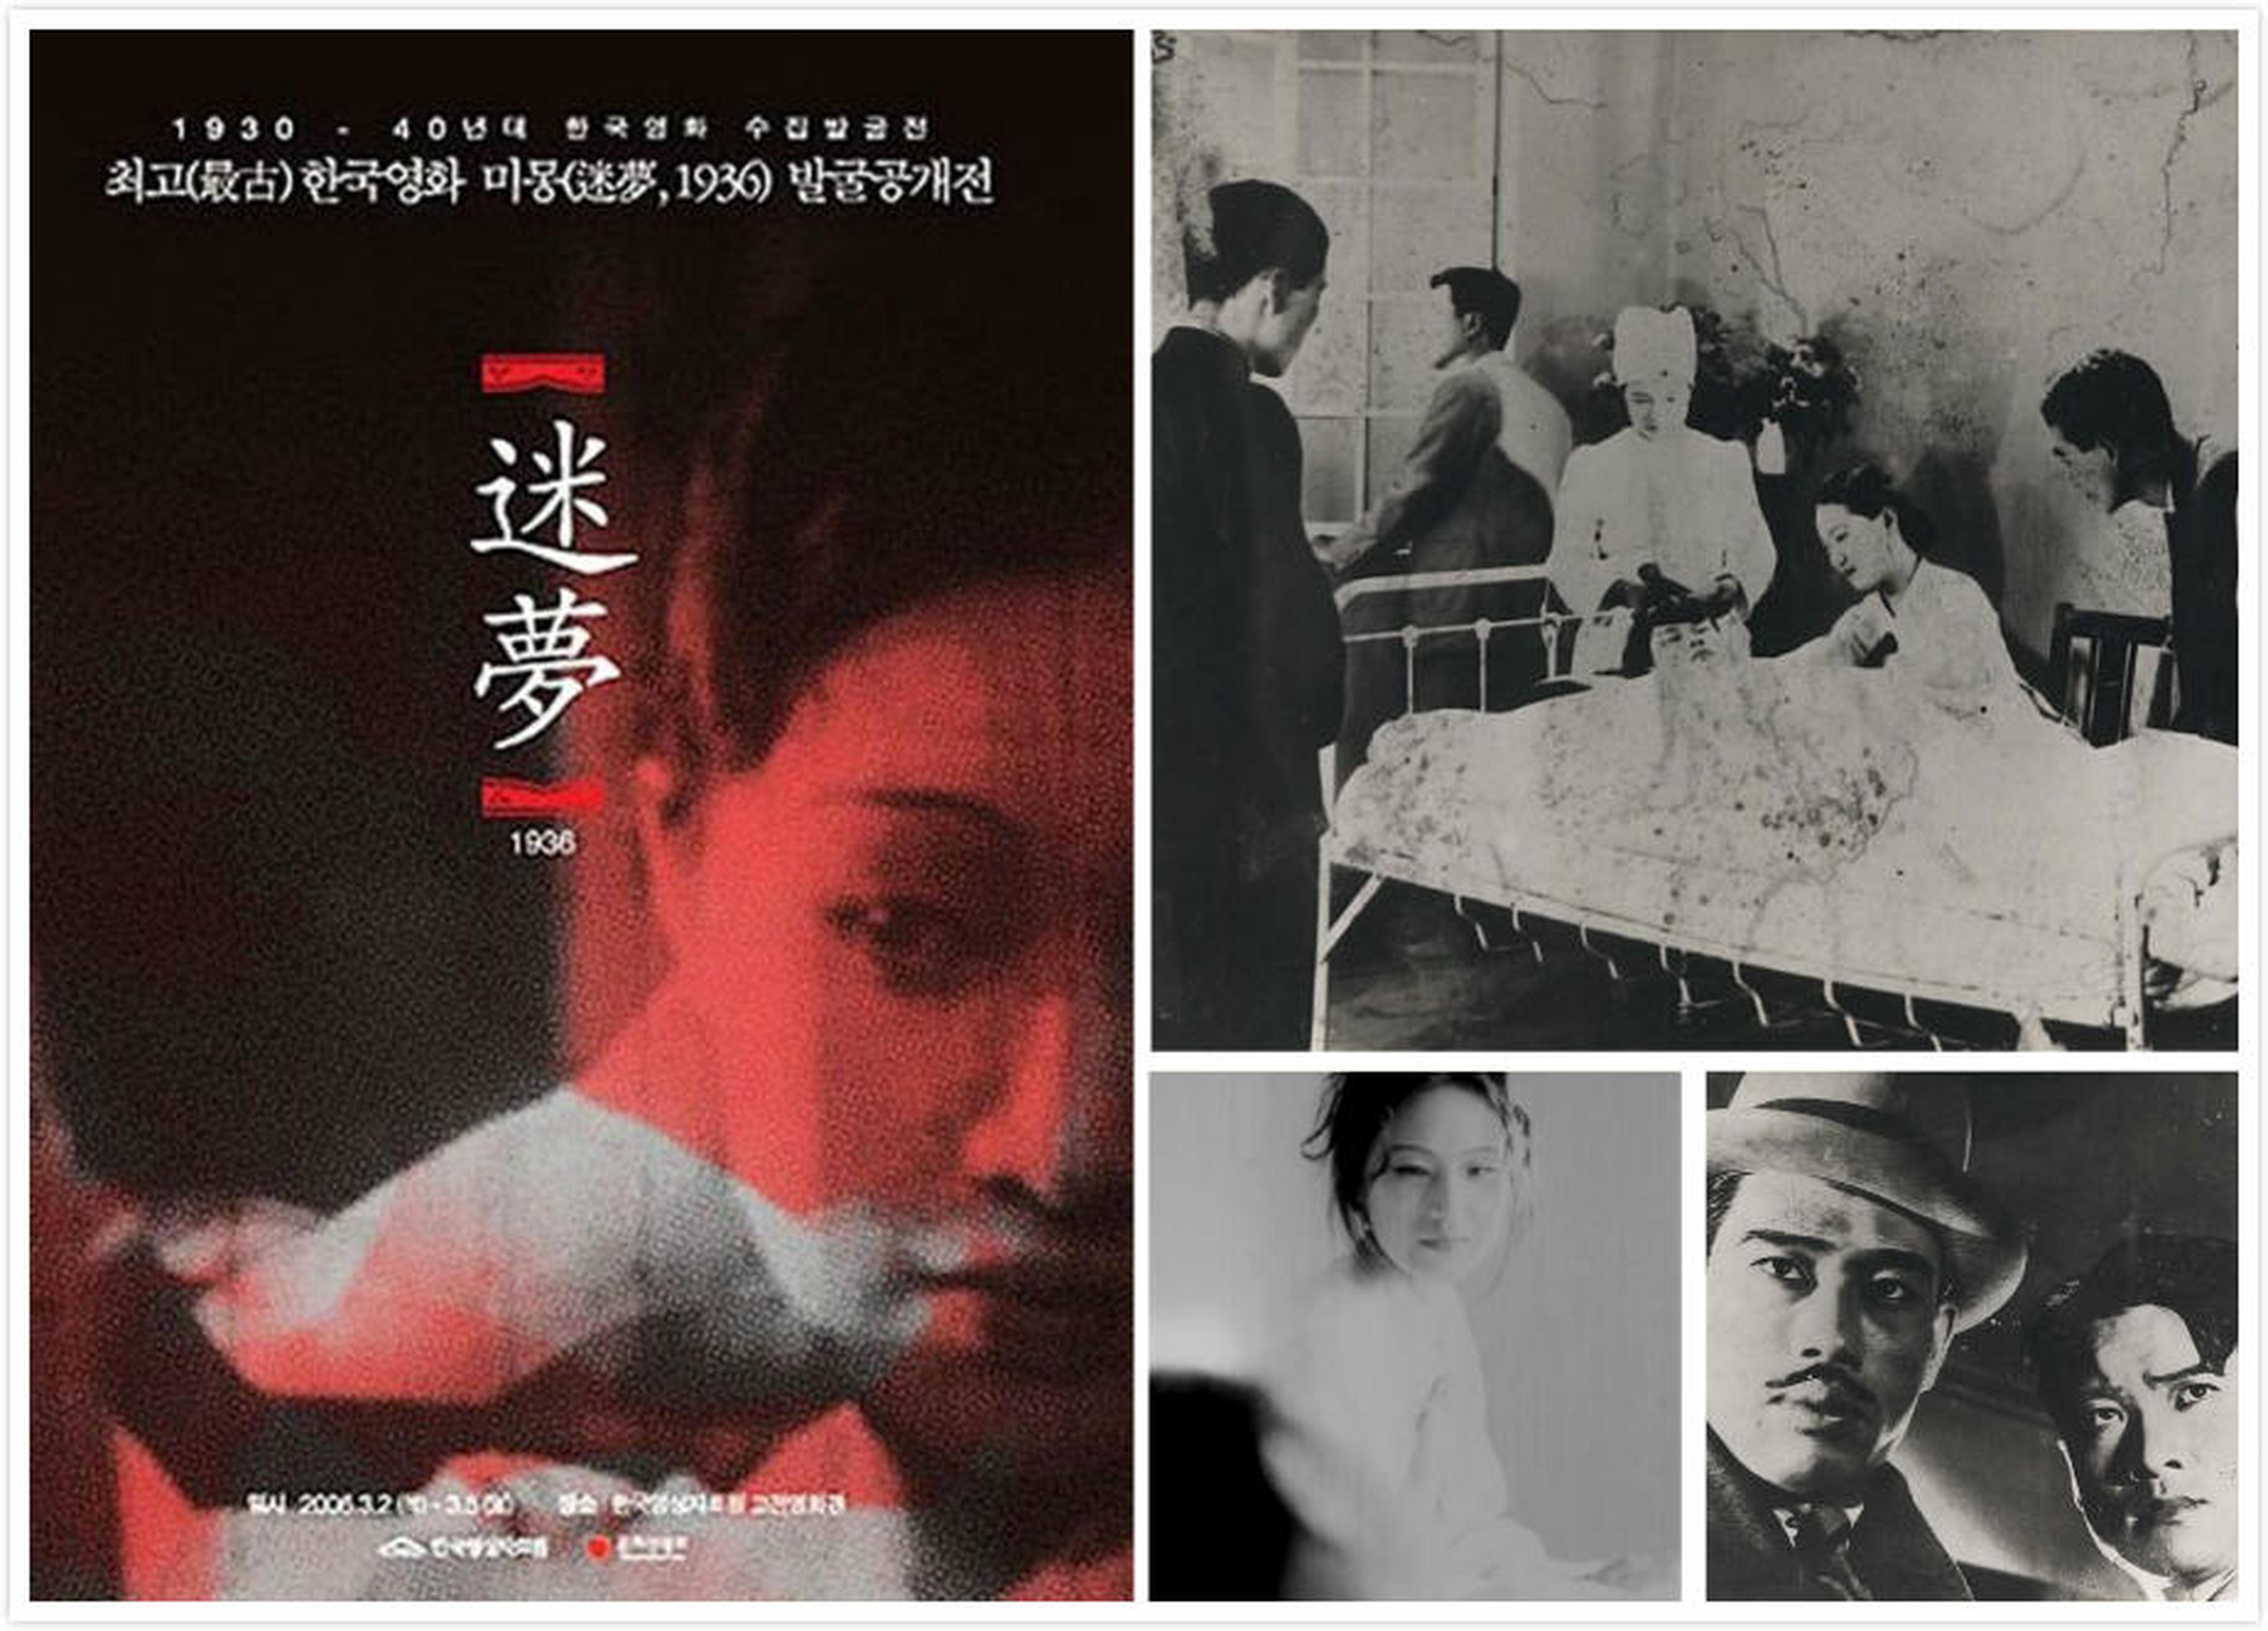 【1930-1950】《迷梦》 (1936)导演杨周南。韩国现存最古老的电影之一，纪录了朝鲜半岛30年代的生活日常，同时表现了社会对新女性的焦虑。更有意思的是很多场景着力表现首尔的街道与交通，原因是这部电影原本就是殖民政府交通部门订做的交通安全宣传片。